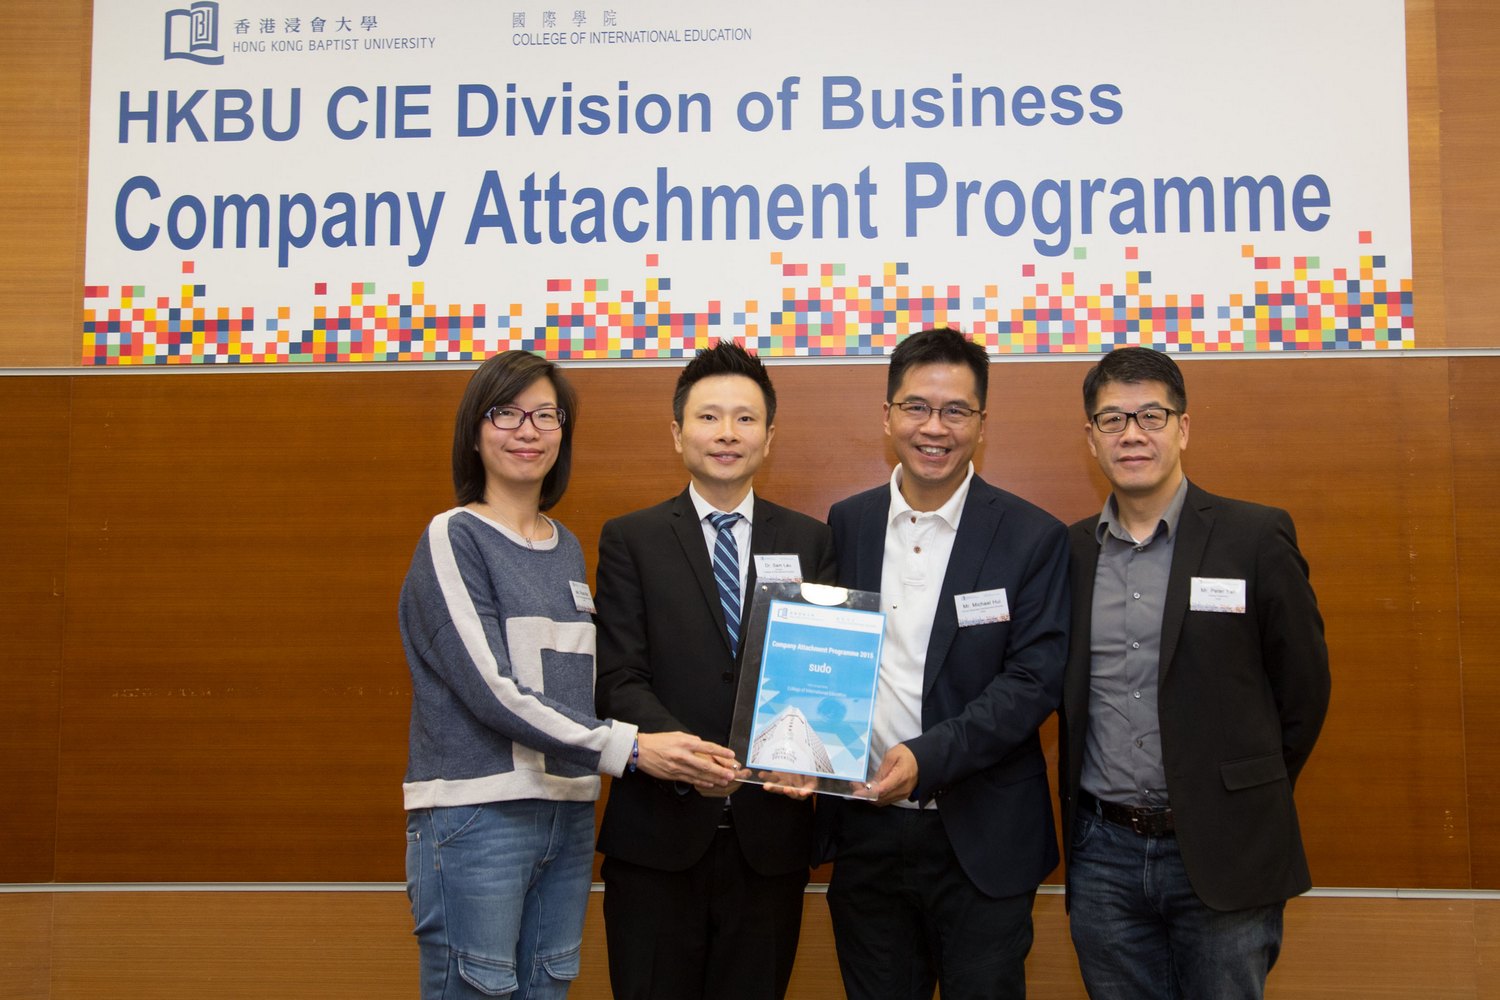  国际学院总监刘信信博士（左二）向「企业体验计画」伙伴机构「sudo」致送纪念品。